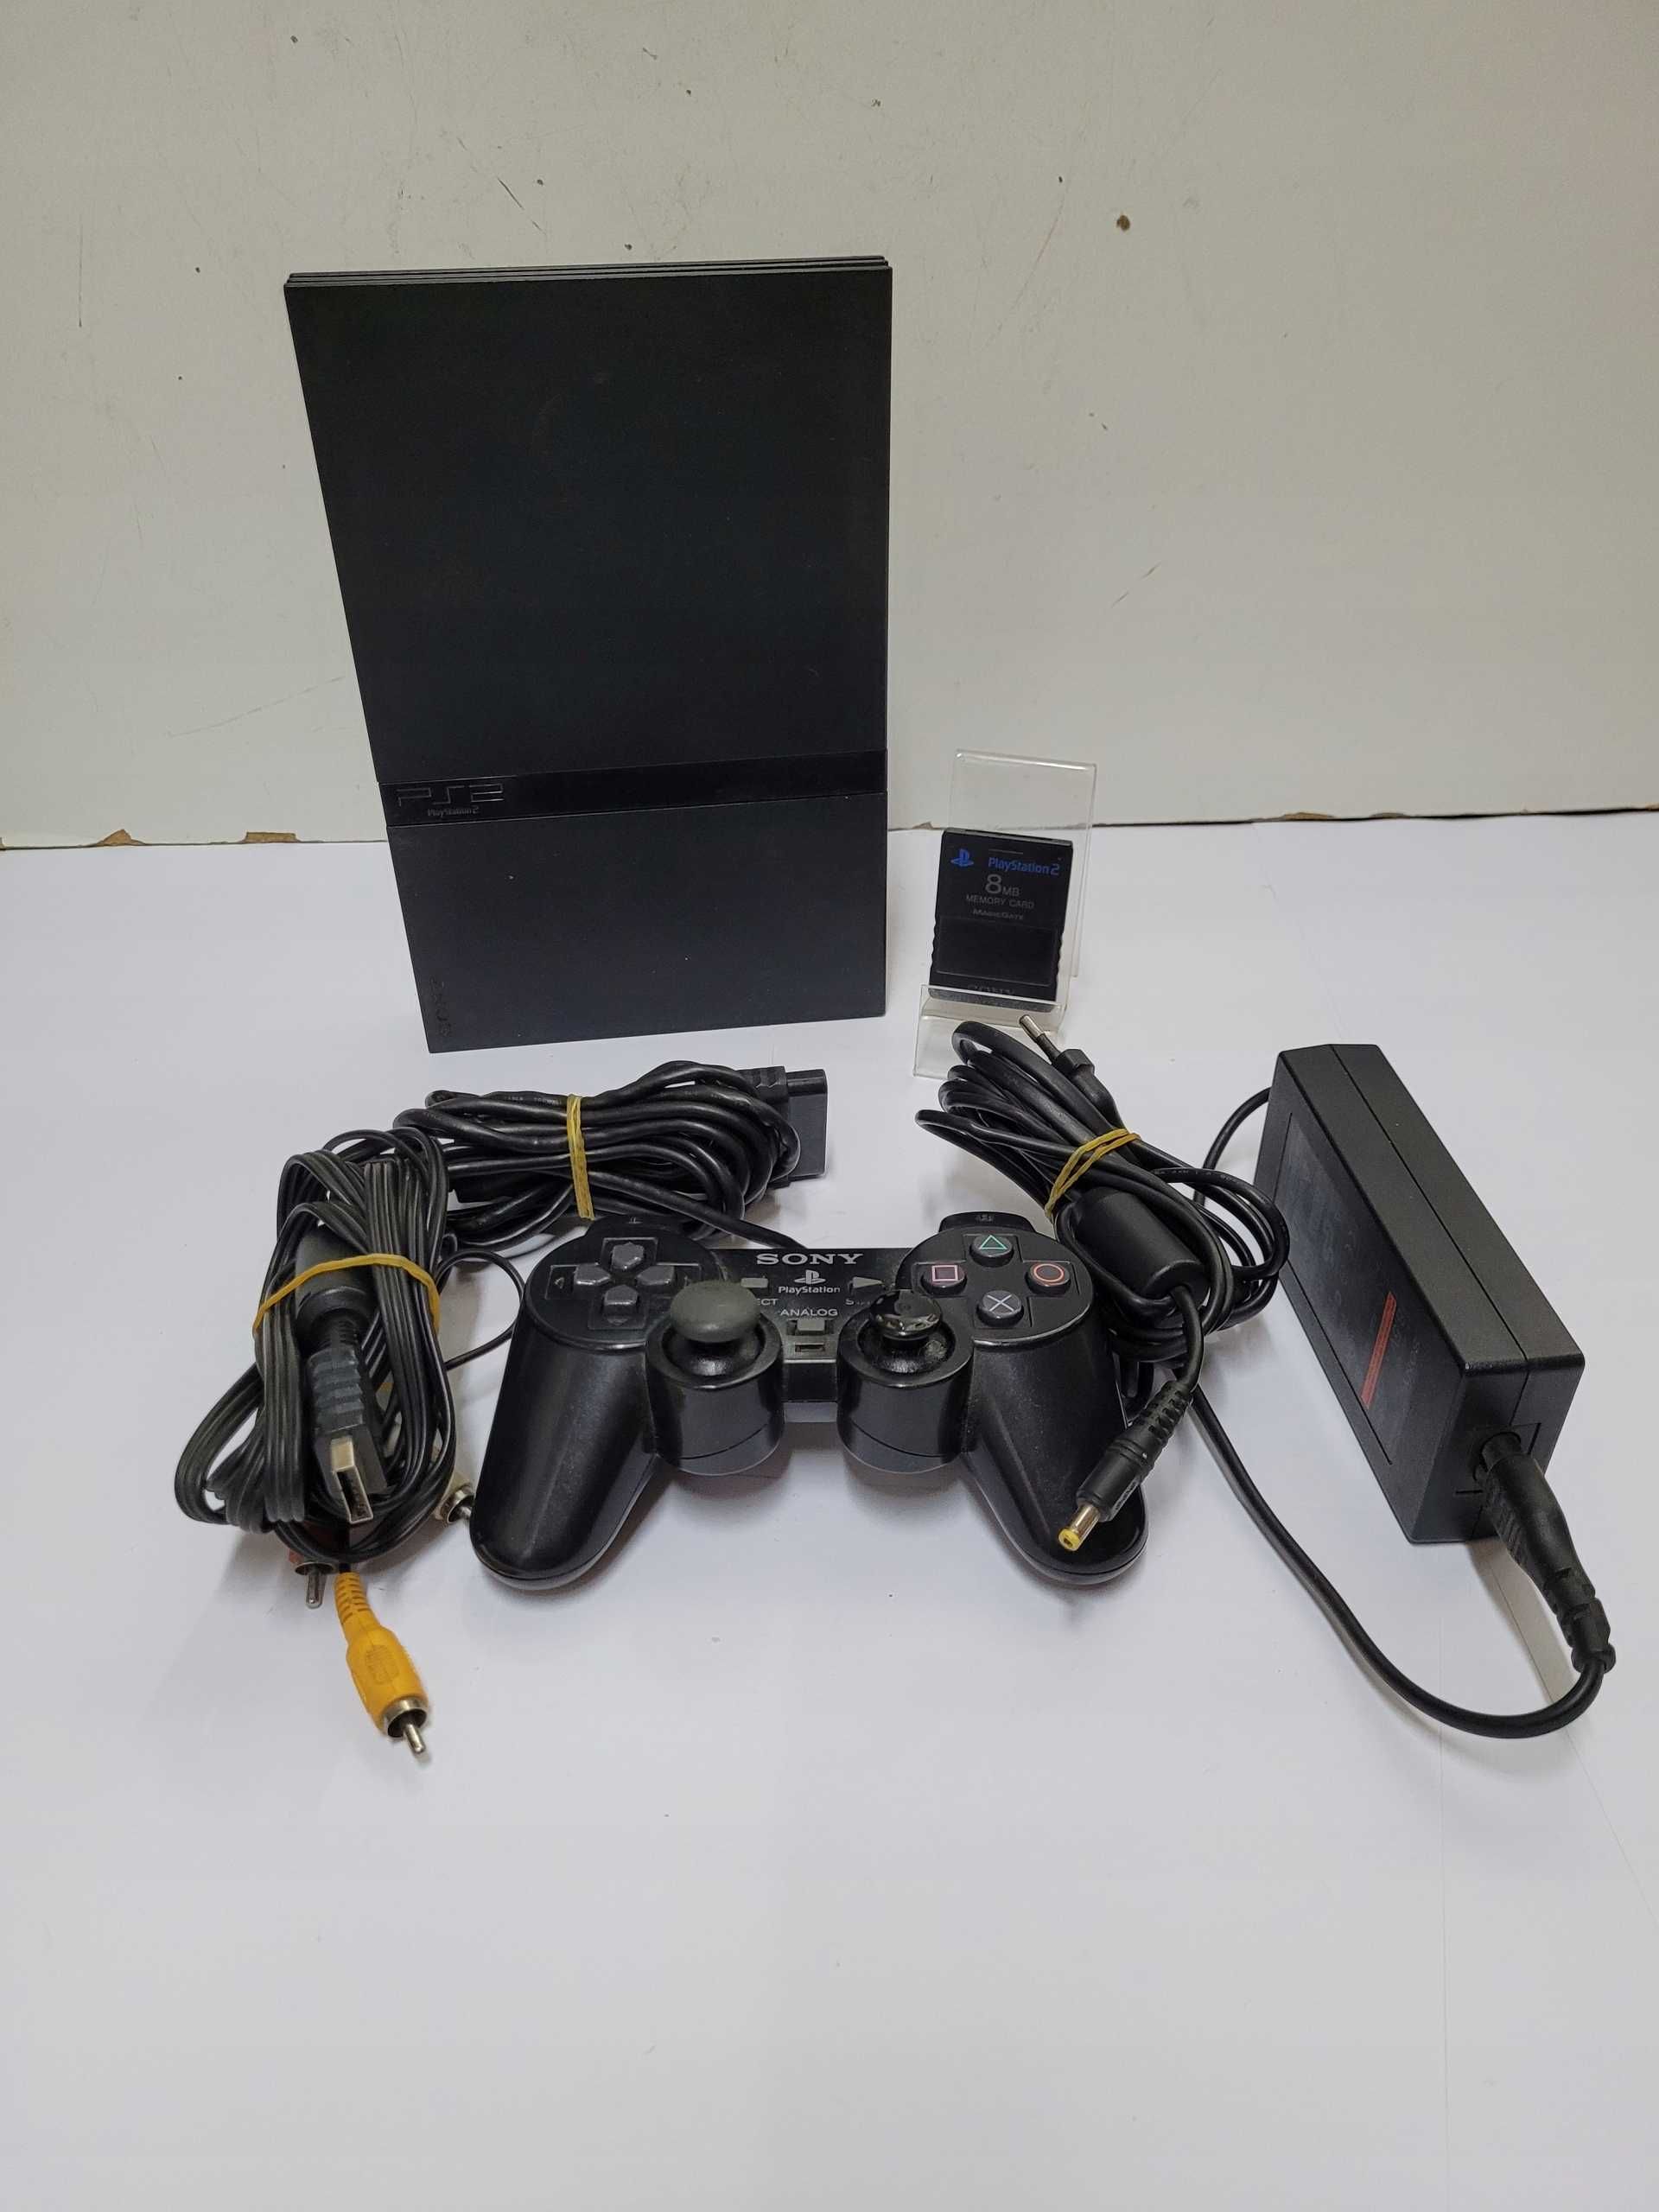 Konsola Sony PS 2 slim uzywana z oryginalnym zasilaczem